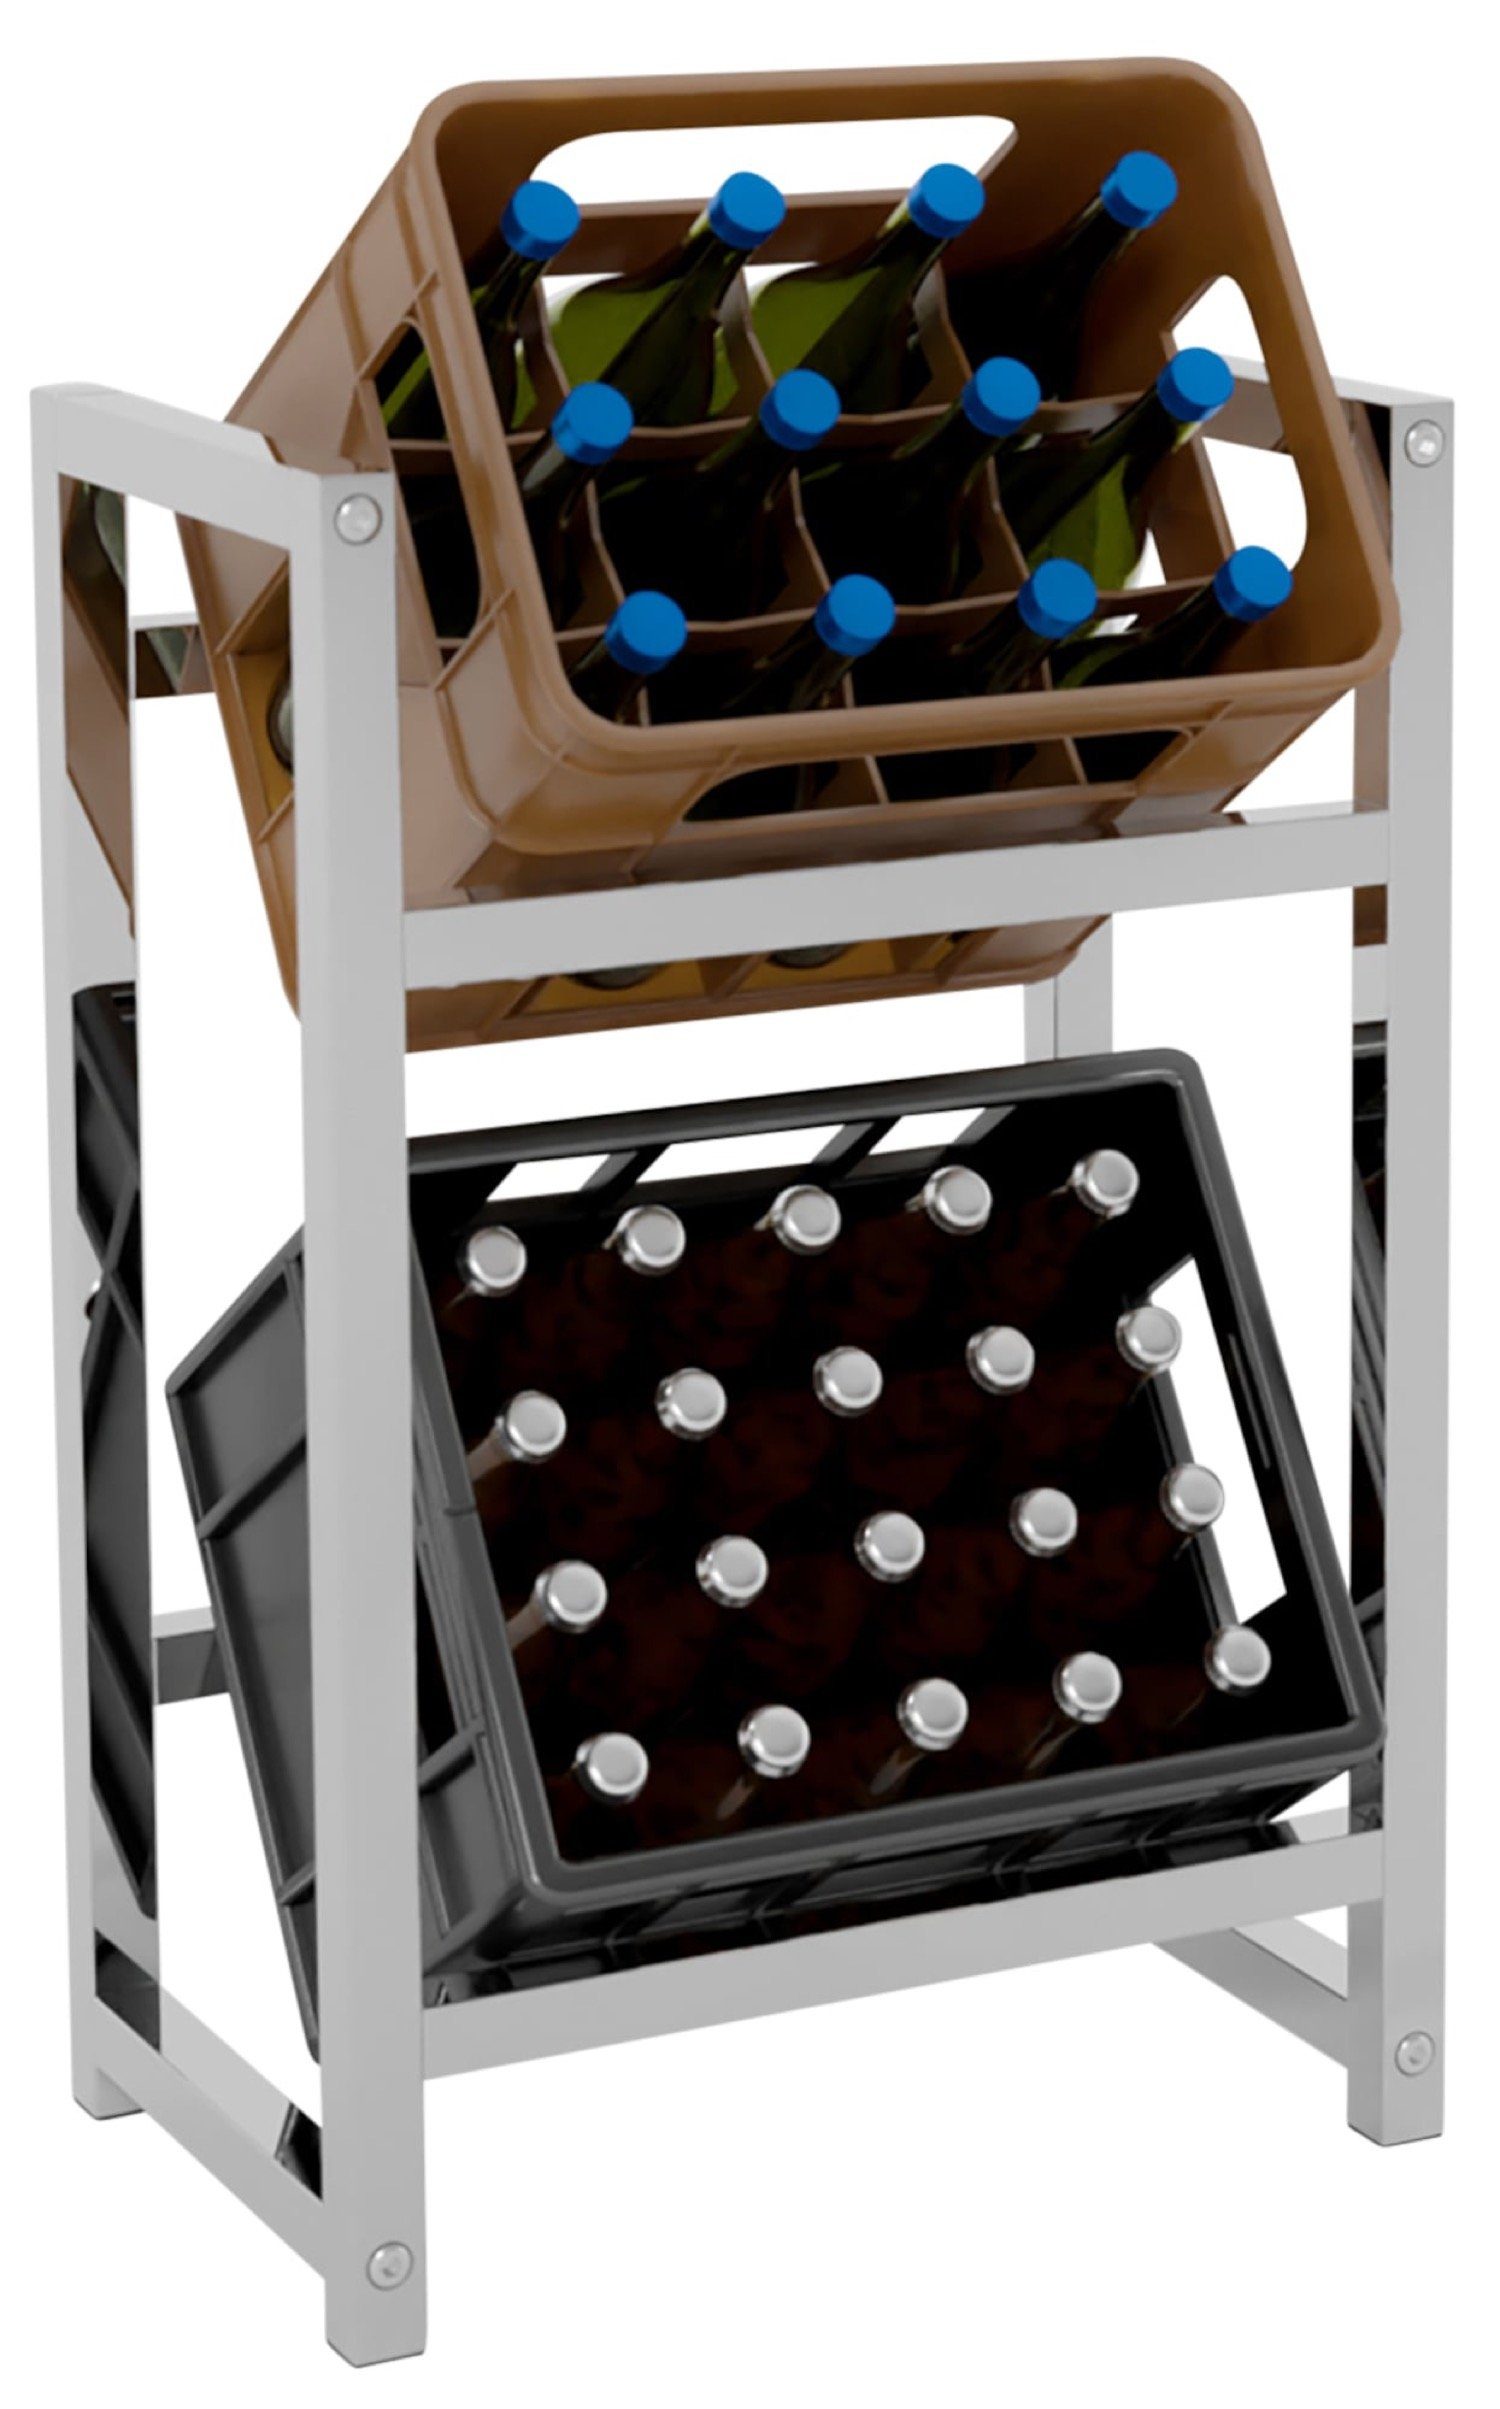 TPFLiving Standregal Getränkekistenständer Star - Getränkeregal für 2 Kisten in chrom, Kastenständer für Getränkekisten - Flaschenregal, Getränkekistenregal mit den Maßen (HxB xT): 75 x 47 x 31 cm